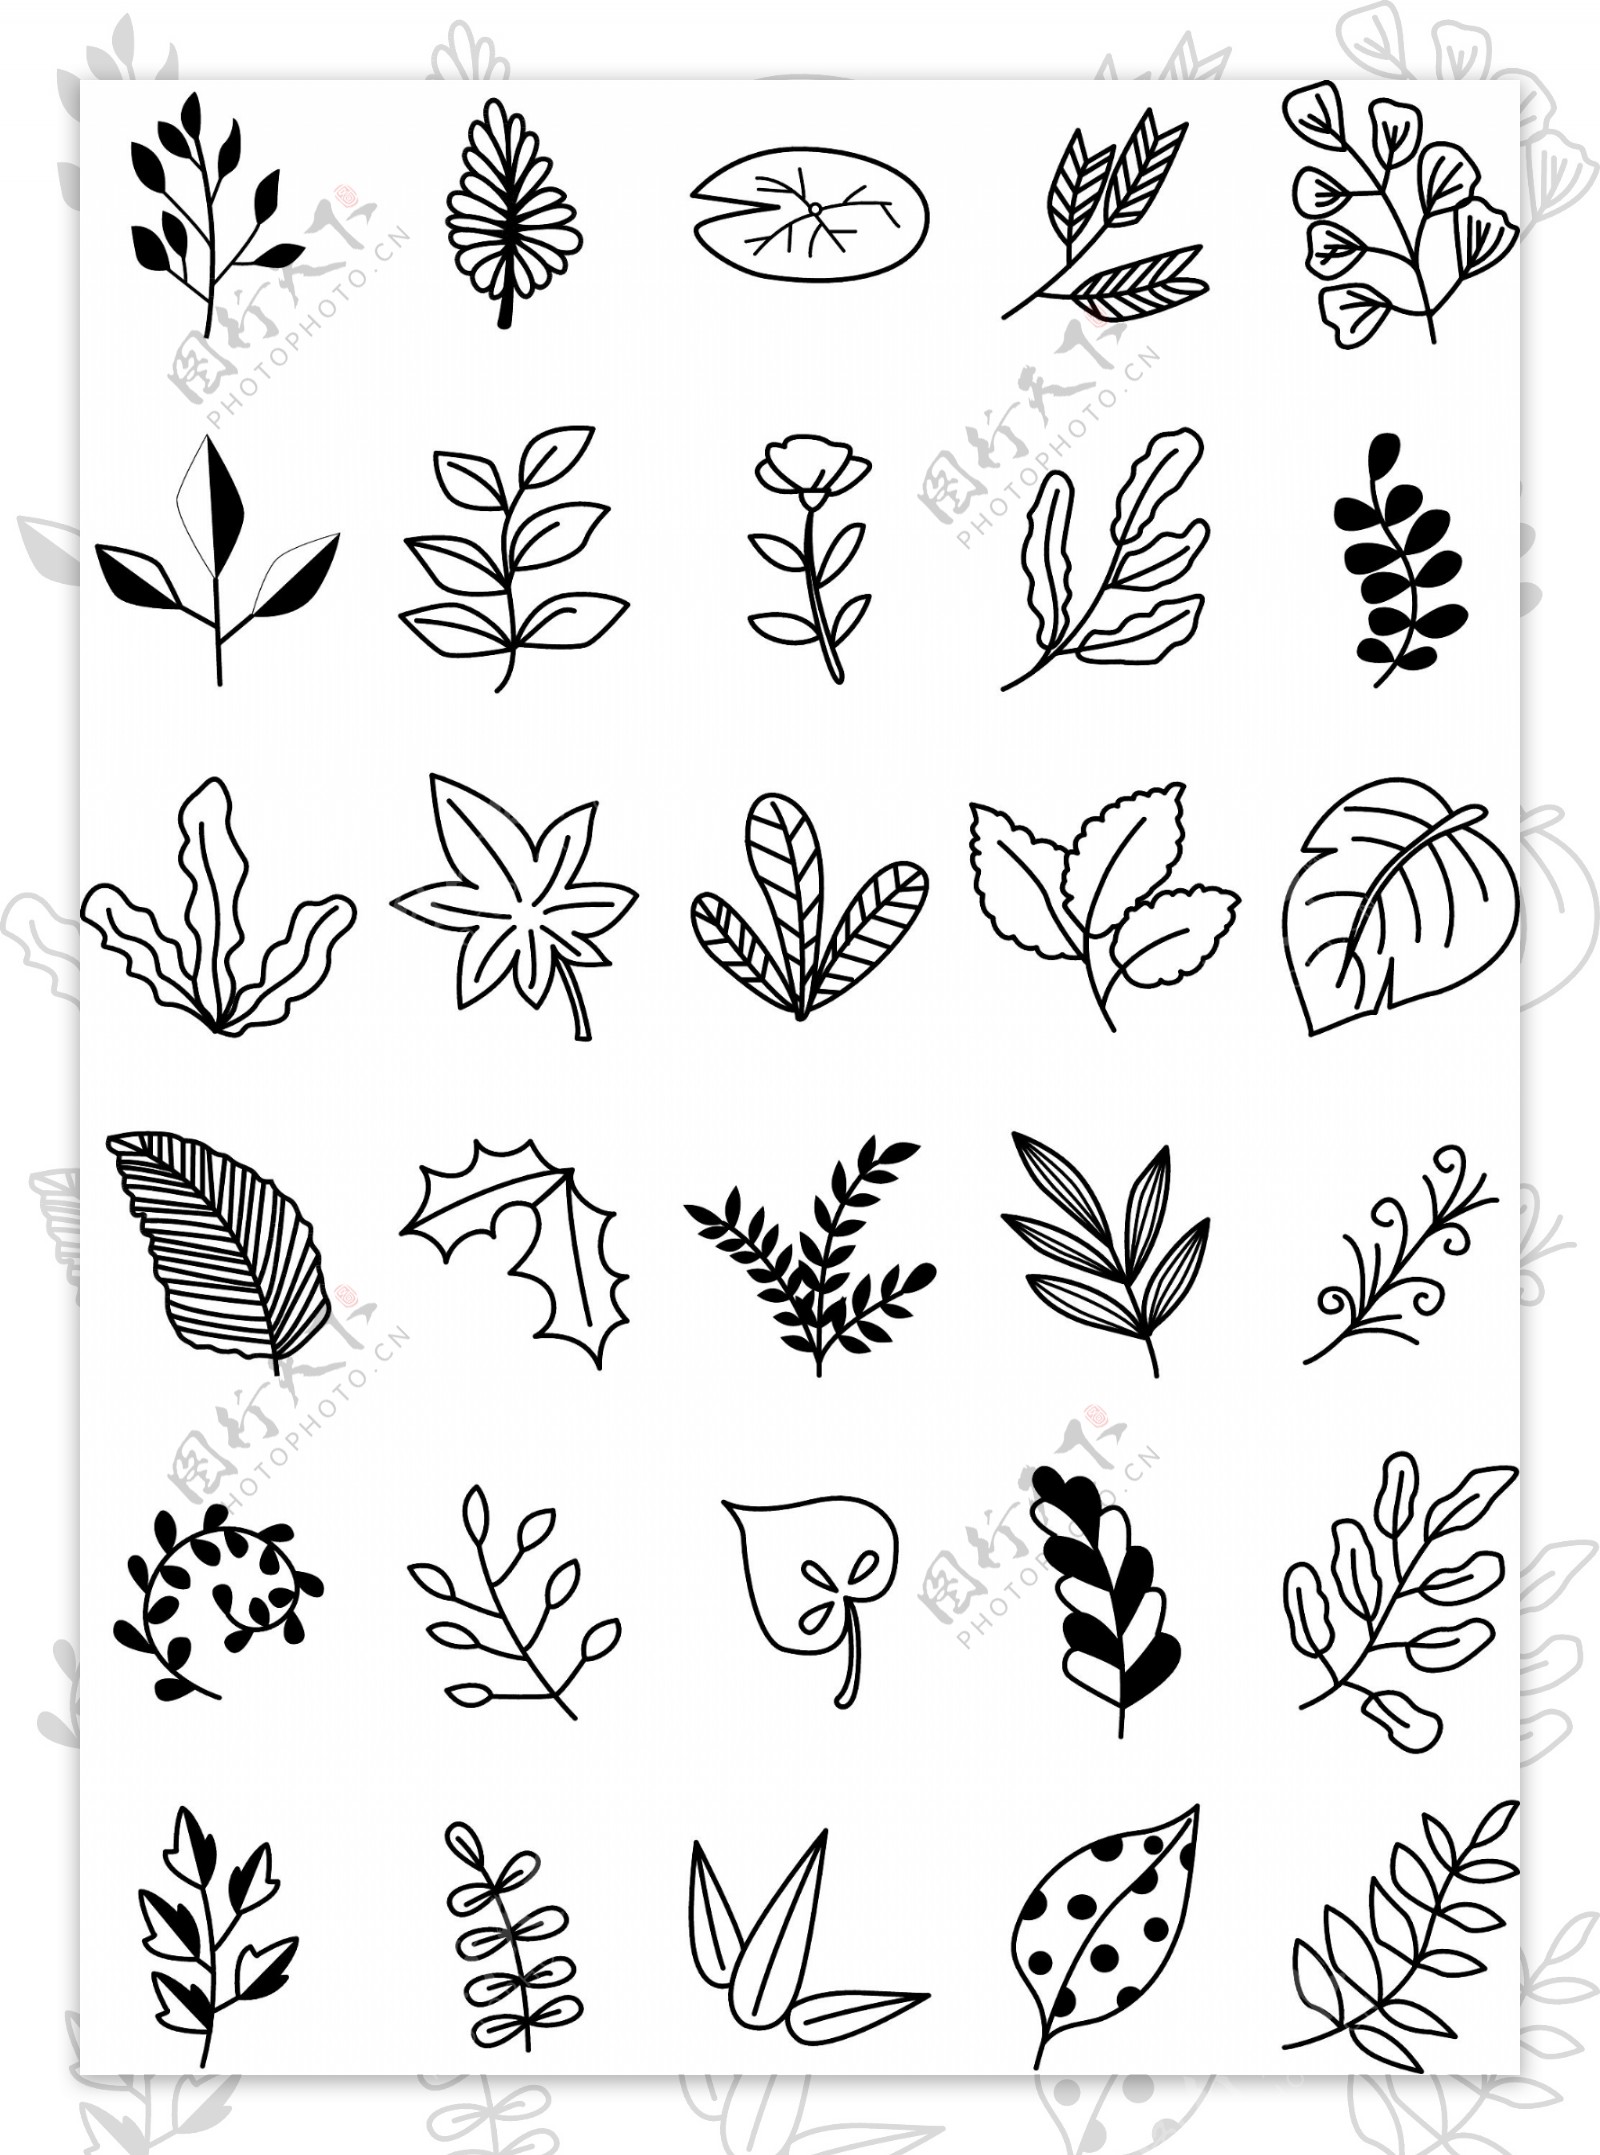 简约黑白植物简笔画矢量素材